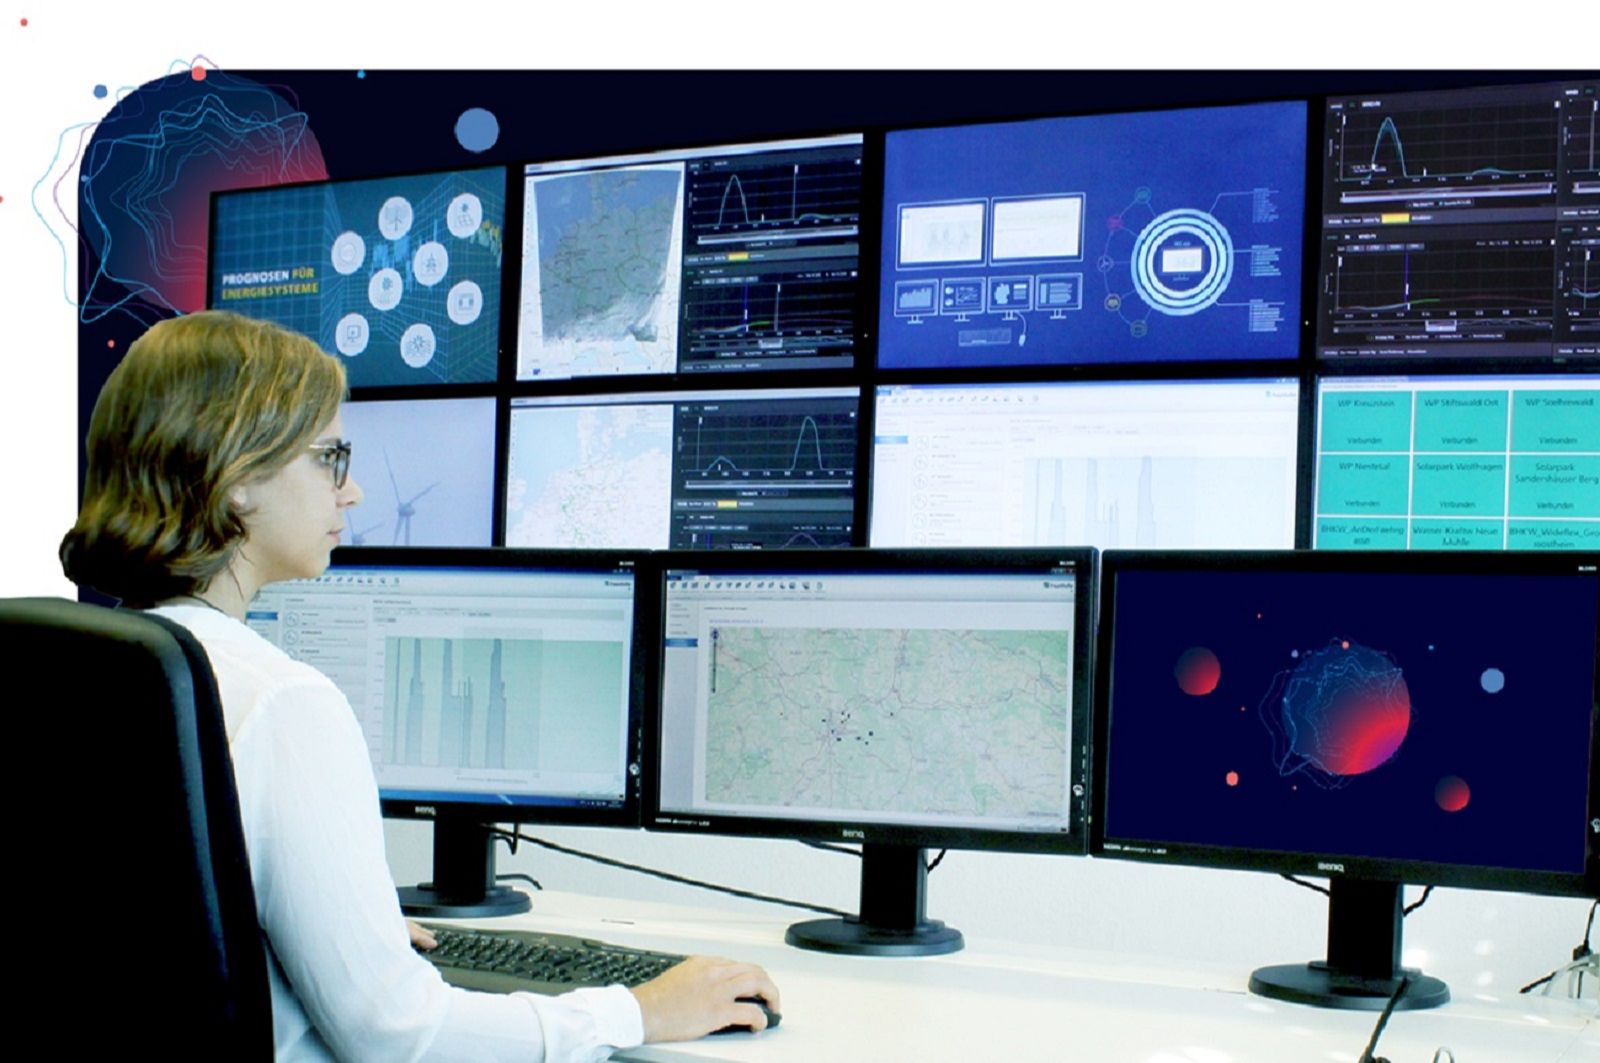 Eine moderne Leitwarte mit einer Vielzahl von Monitoren, welche verschiedene Informationen eines Energiesystems darstellt. Die Leitwarte wird von einer Person überwacht, die durch KI gestützte Systeme komplexe Situationen beherrschen kann.